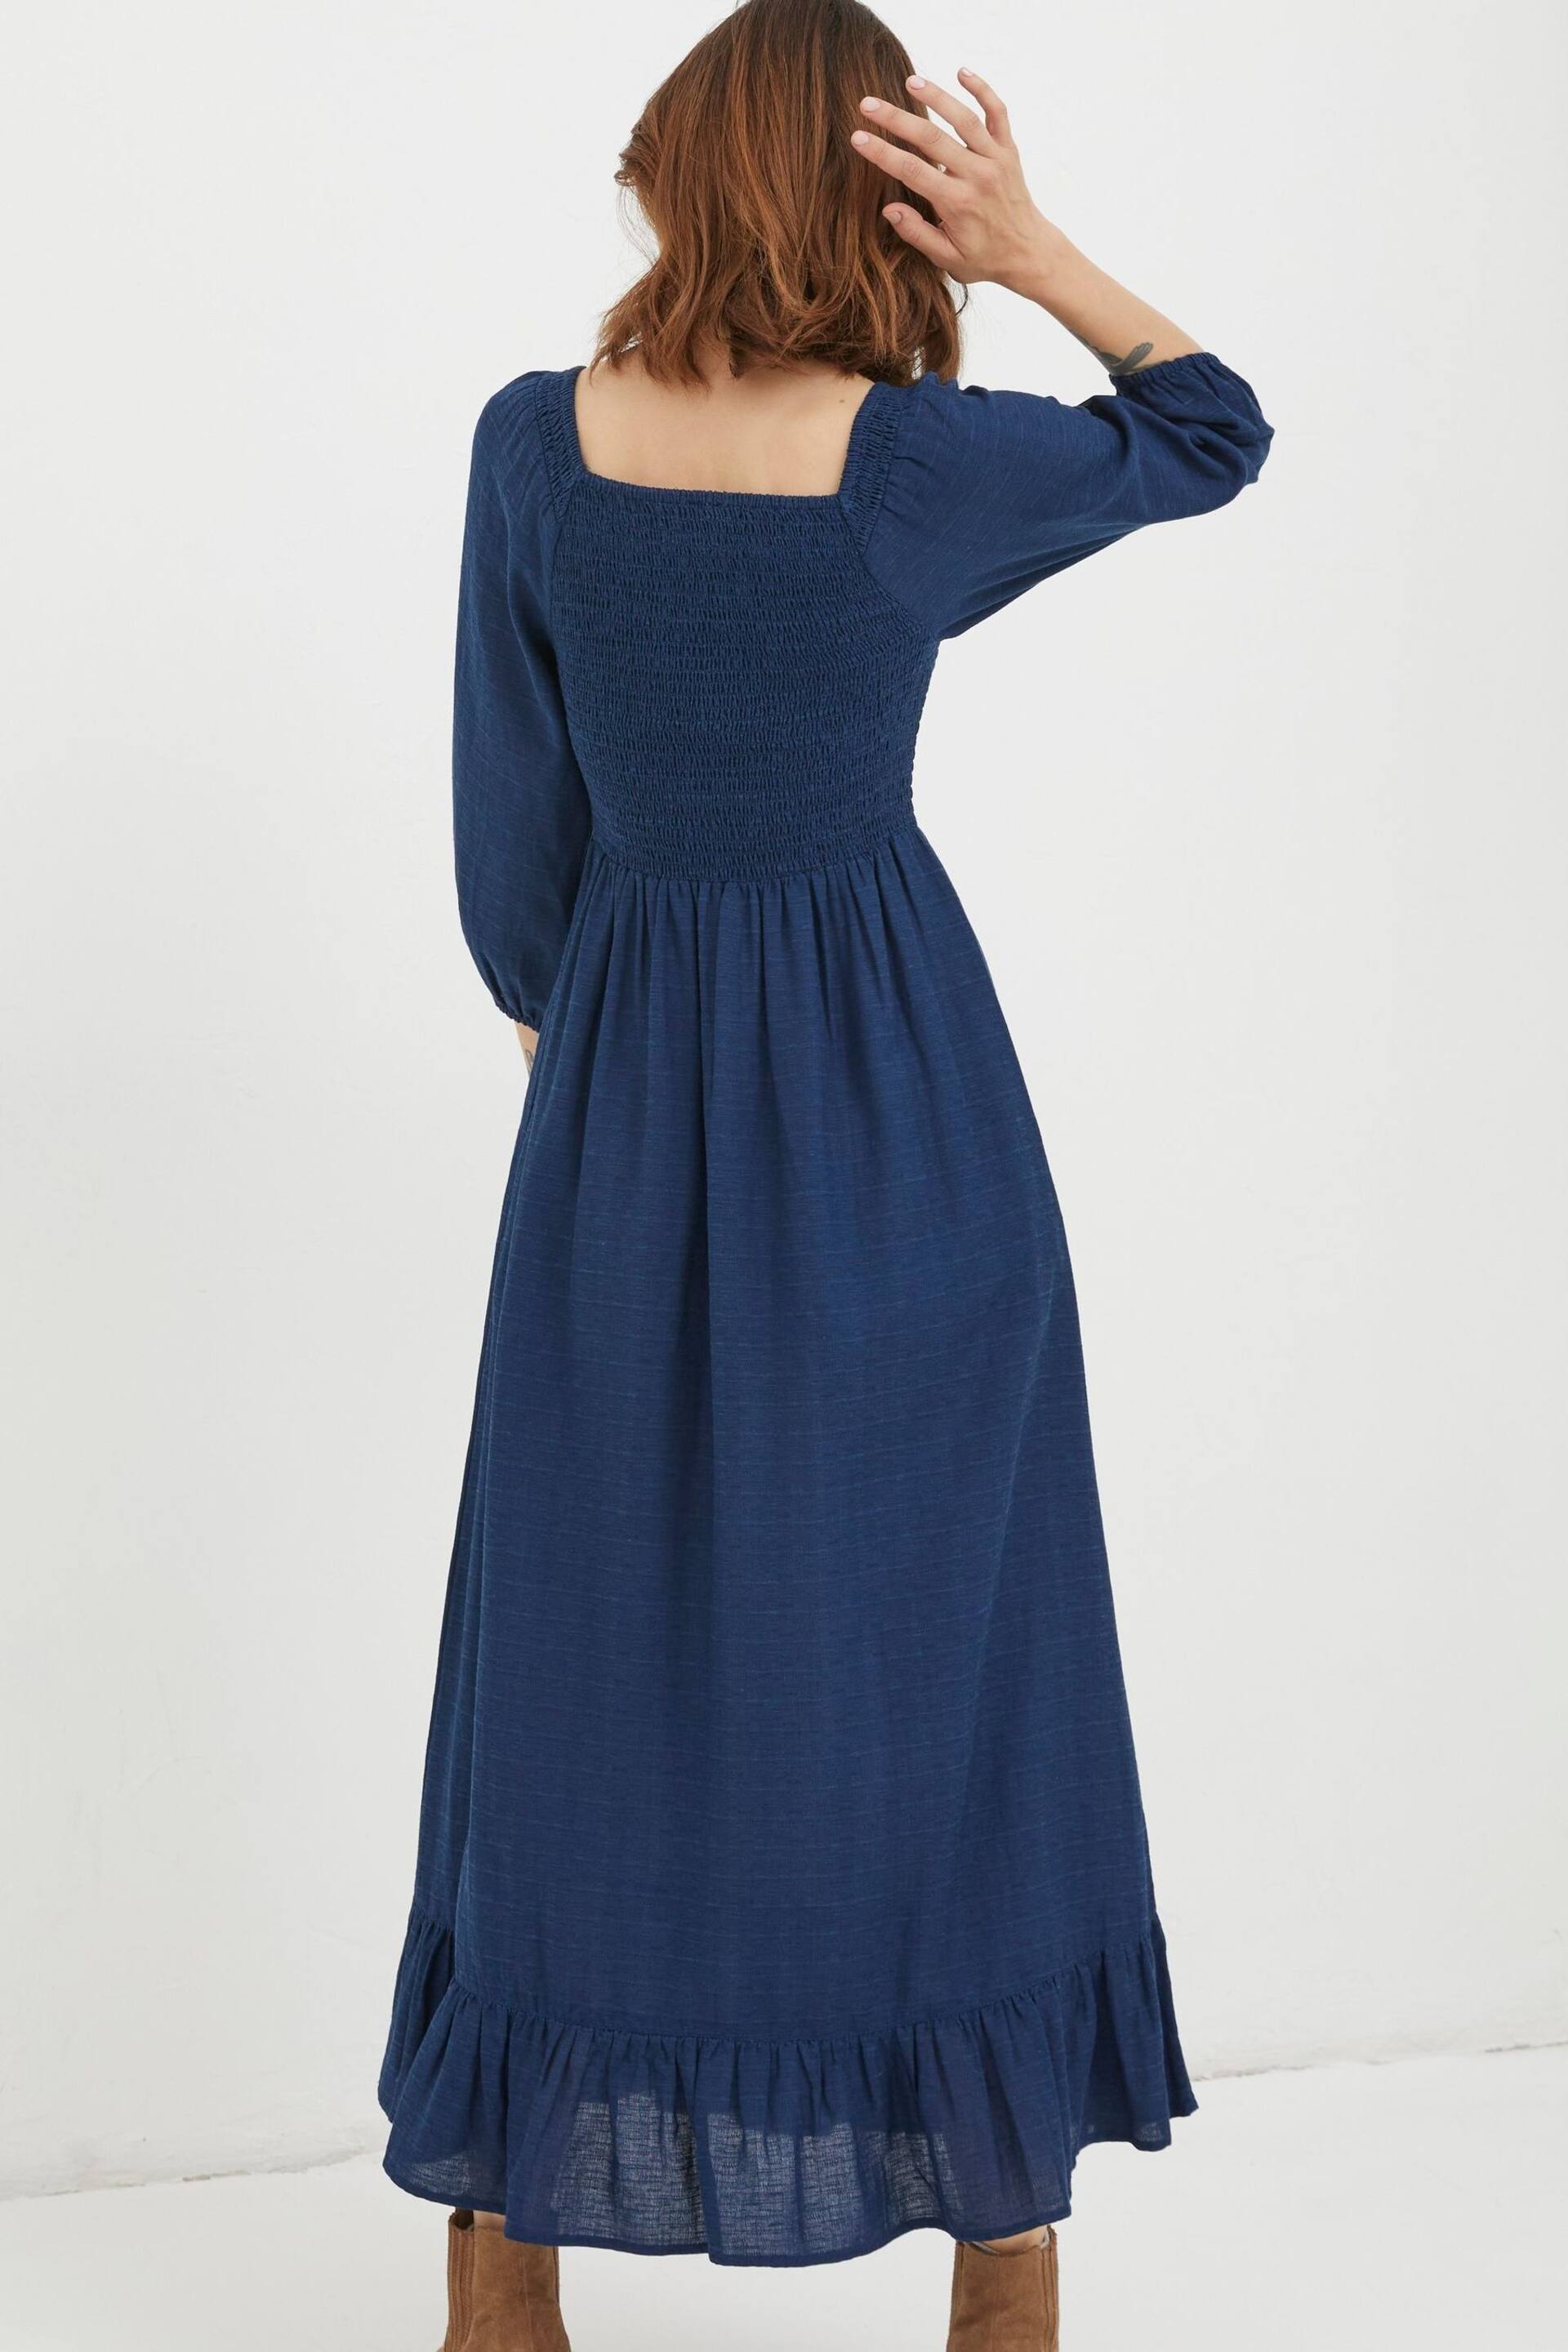 FatFace Blue Adele Midi Dress - Image 2 of 5